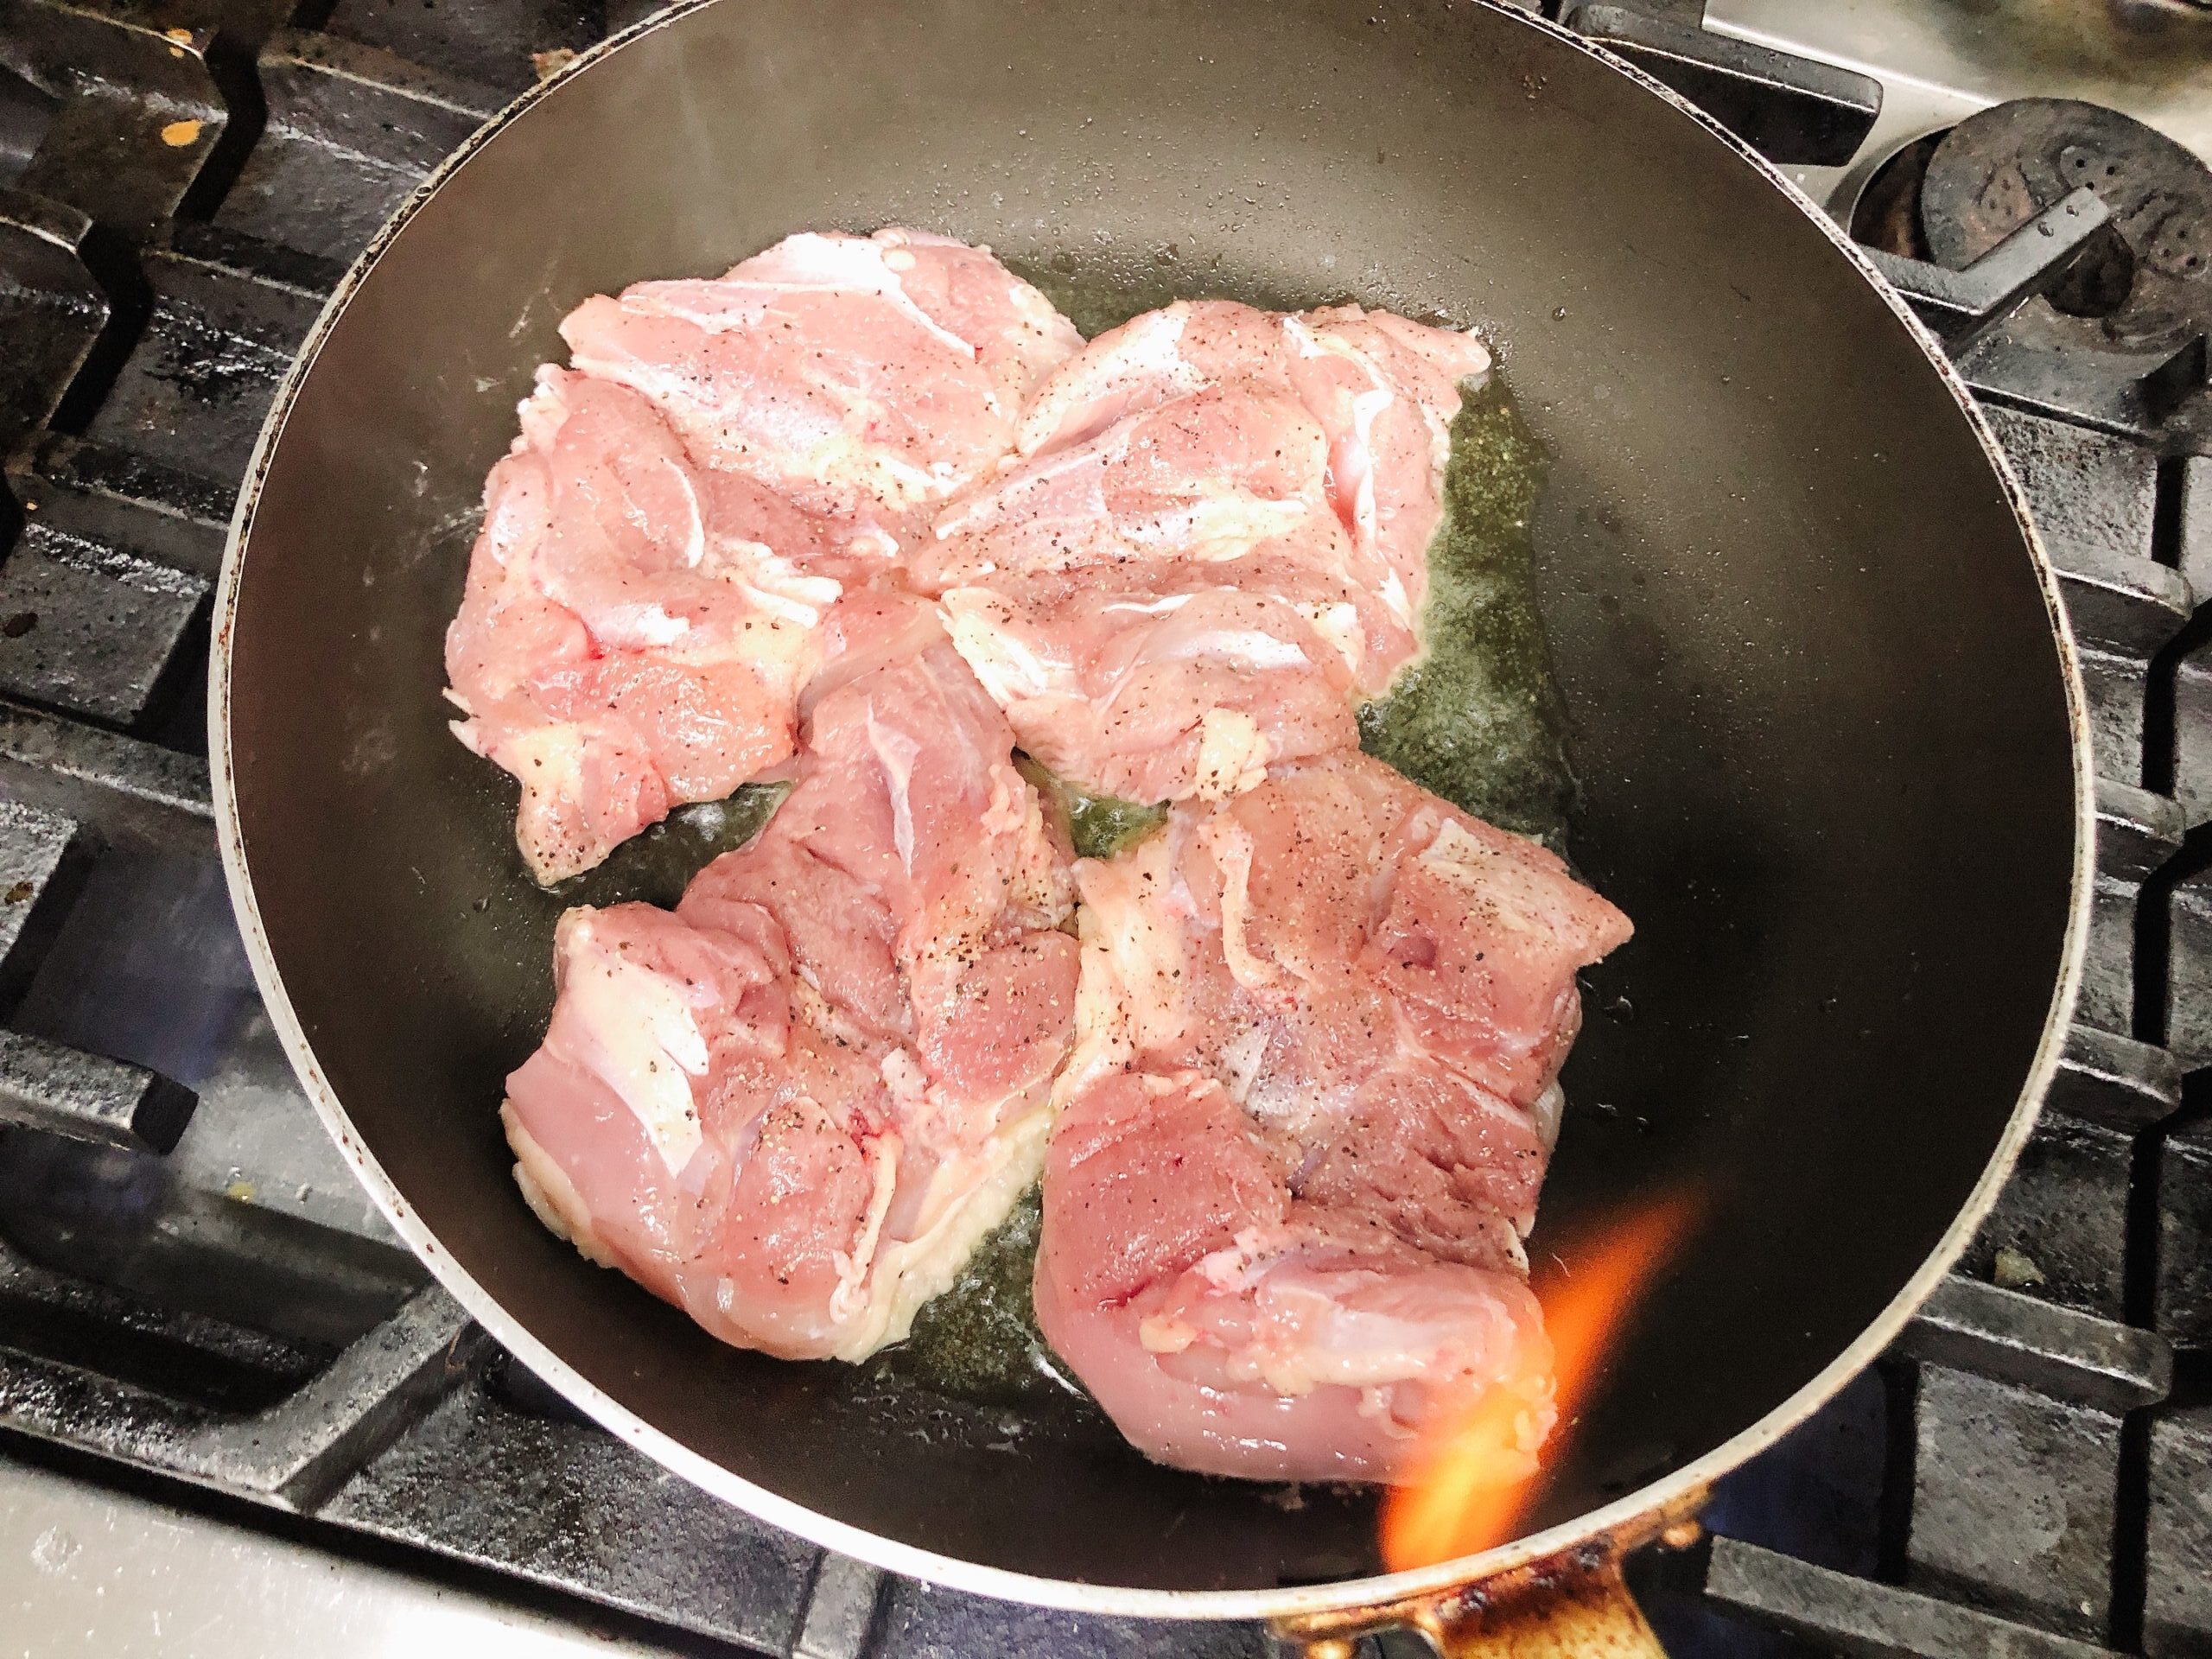 熱したフライパンに油をひいて、皮目から下味をつけた鶏肉を焼いている様子の画像です